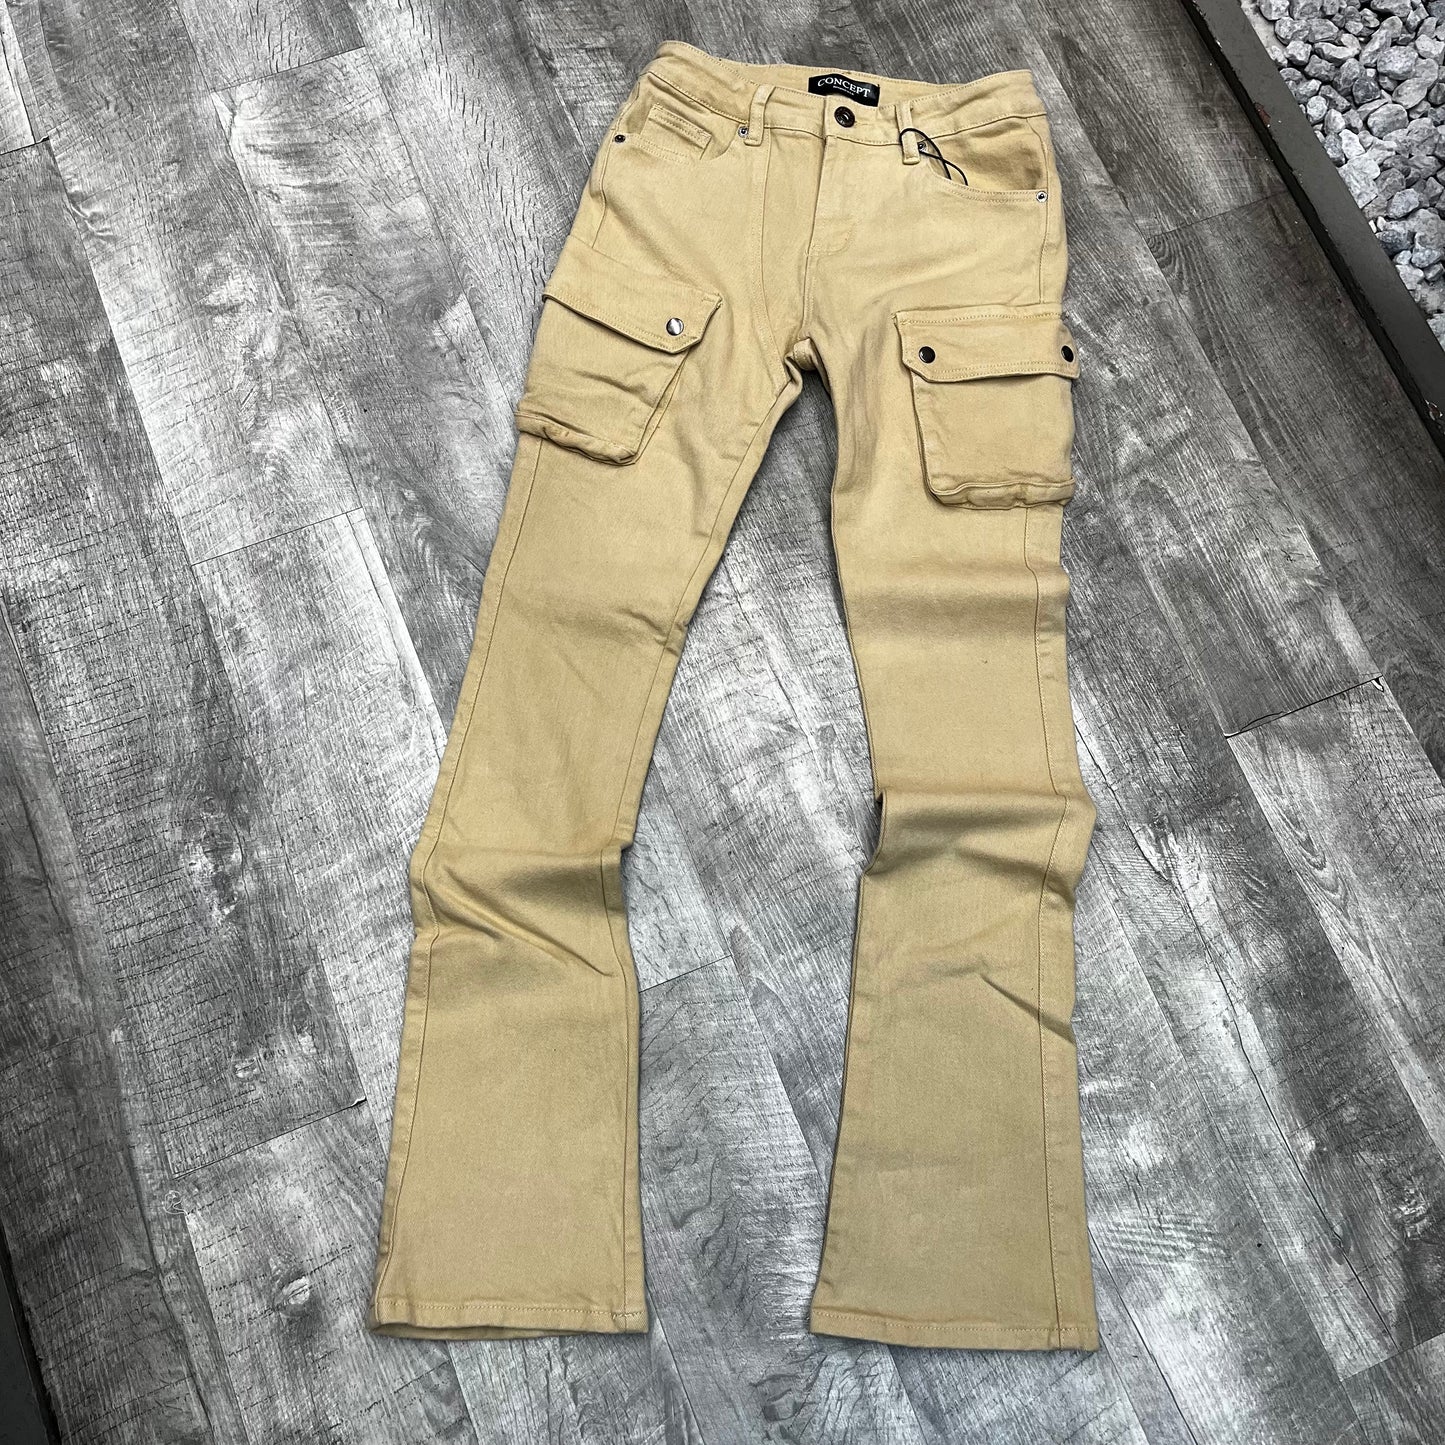 Cla “khaki” cargo stacked pant